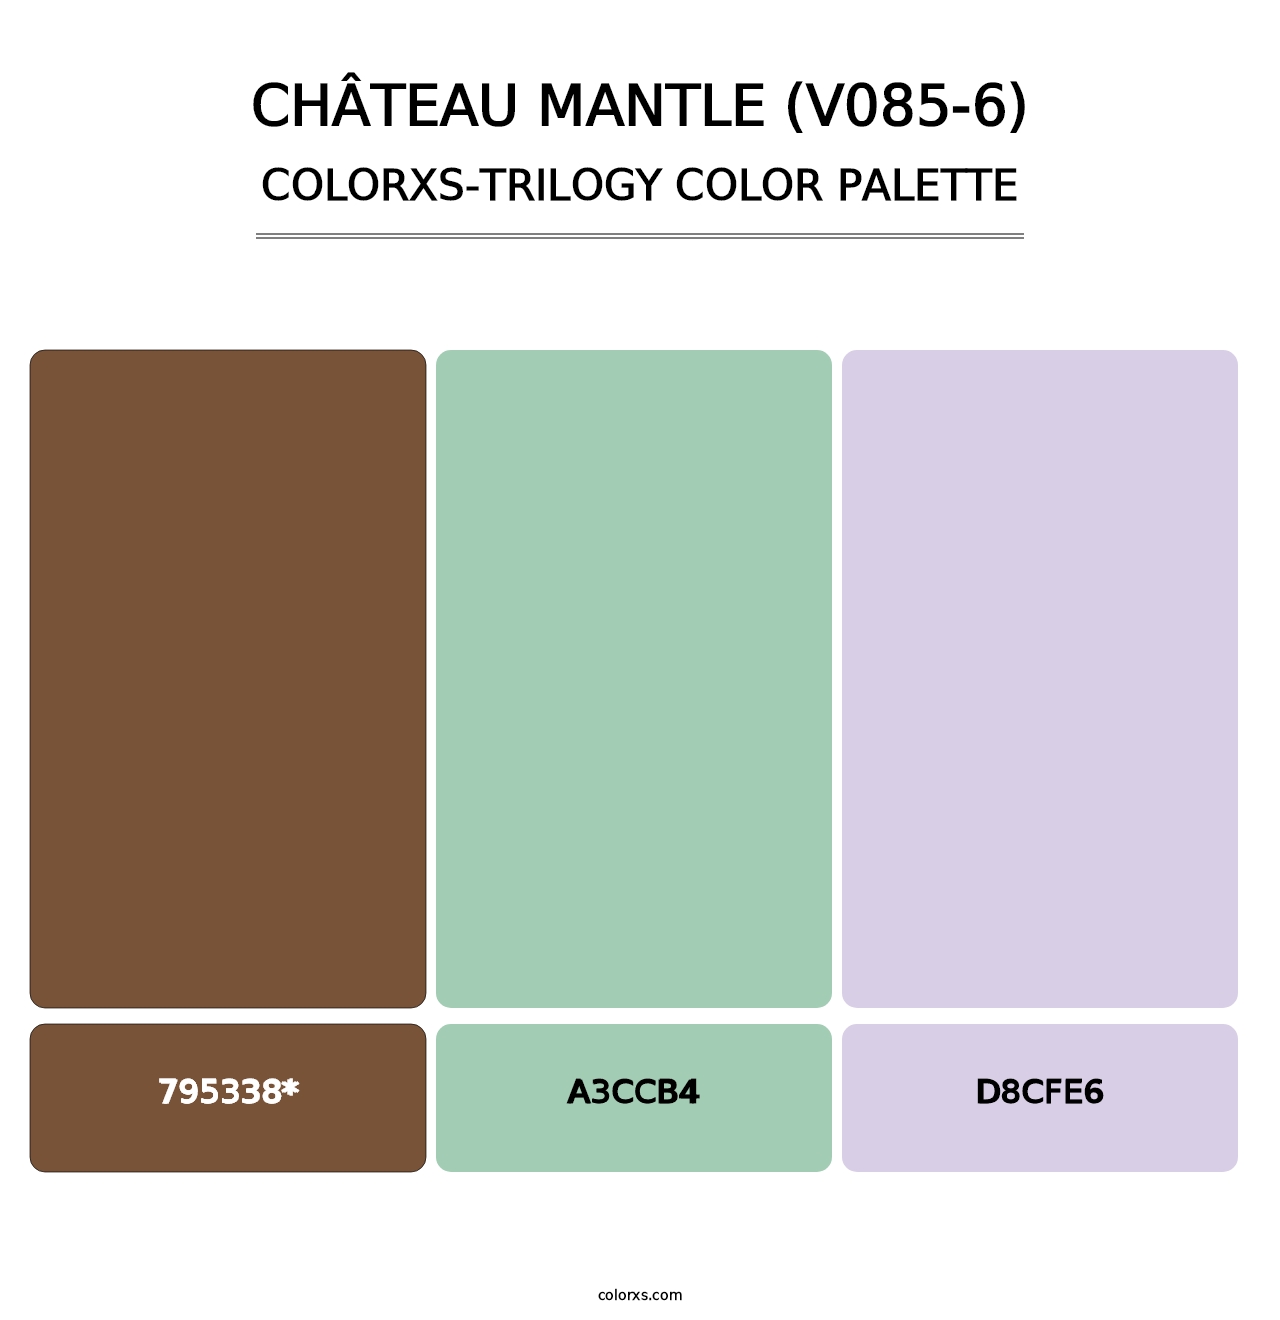 Château Mantle (V085-6) - Colorxs Trilogy Palette